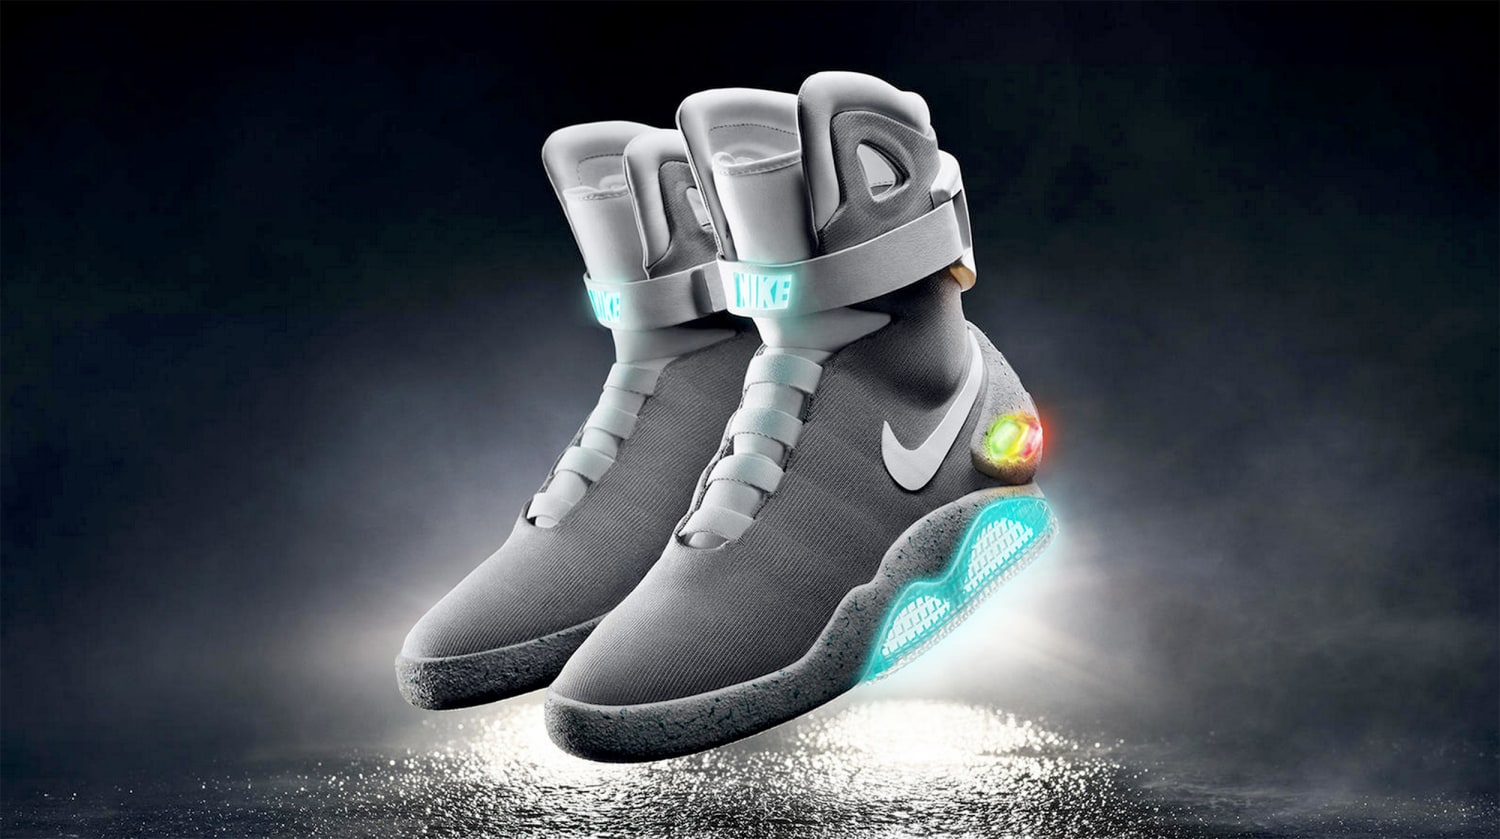 Niet essentieel Makkelijk te lezen lont Michael J. Fox Gets First Pair of 'Back to the Future' Sneakers From Nike